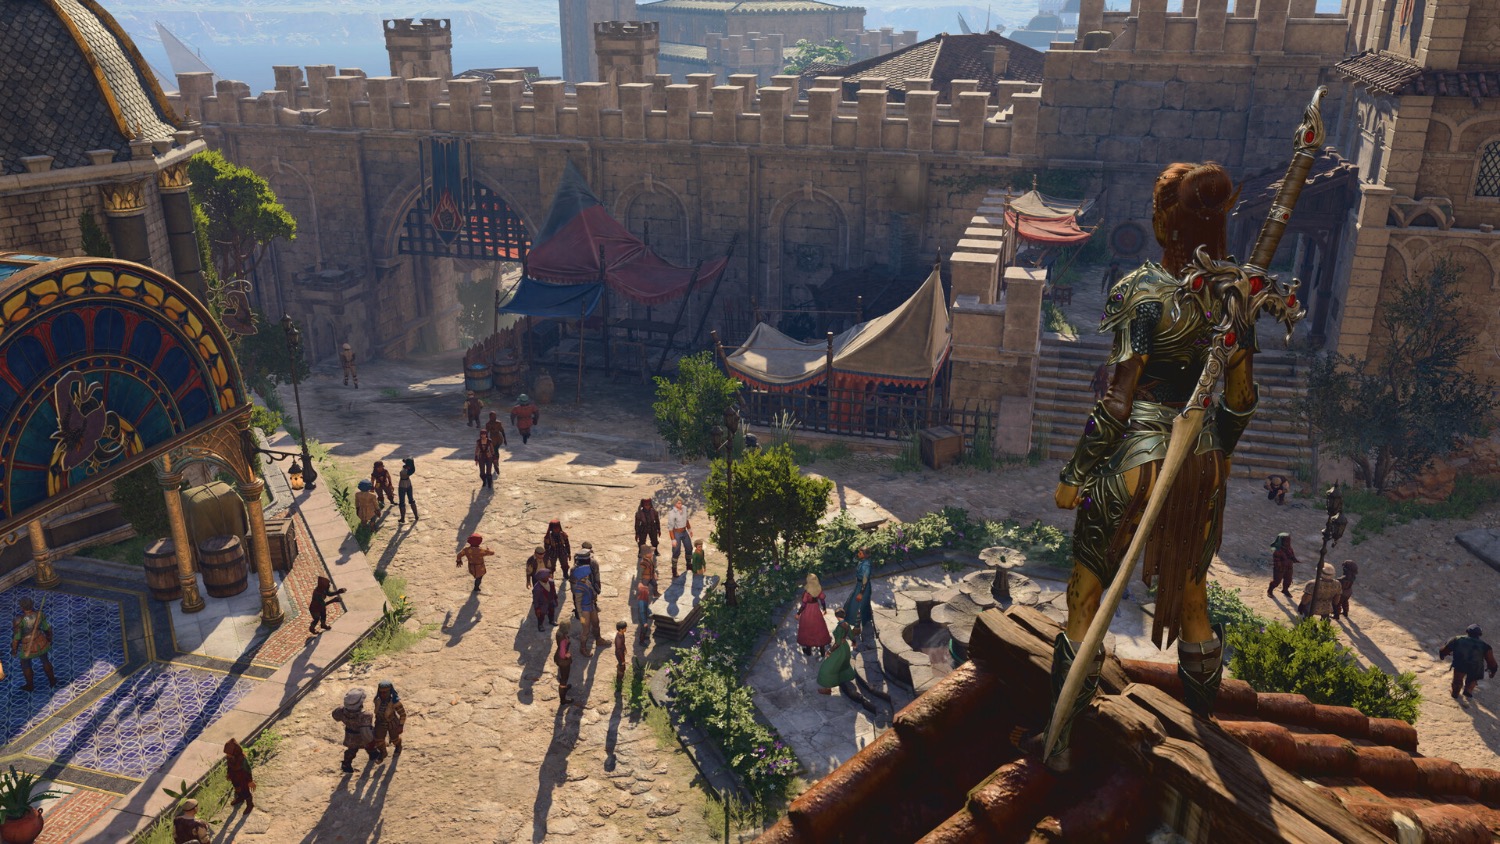 Скриншоты Baldur's Gate 3 Deluxe Edition [PS5, русская версия] интернет-магазин Омегагейм